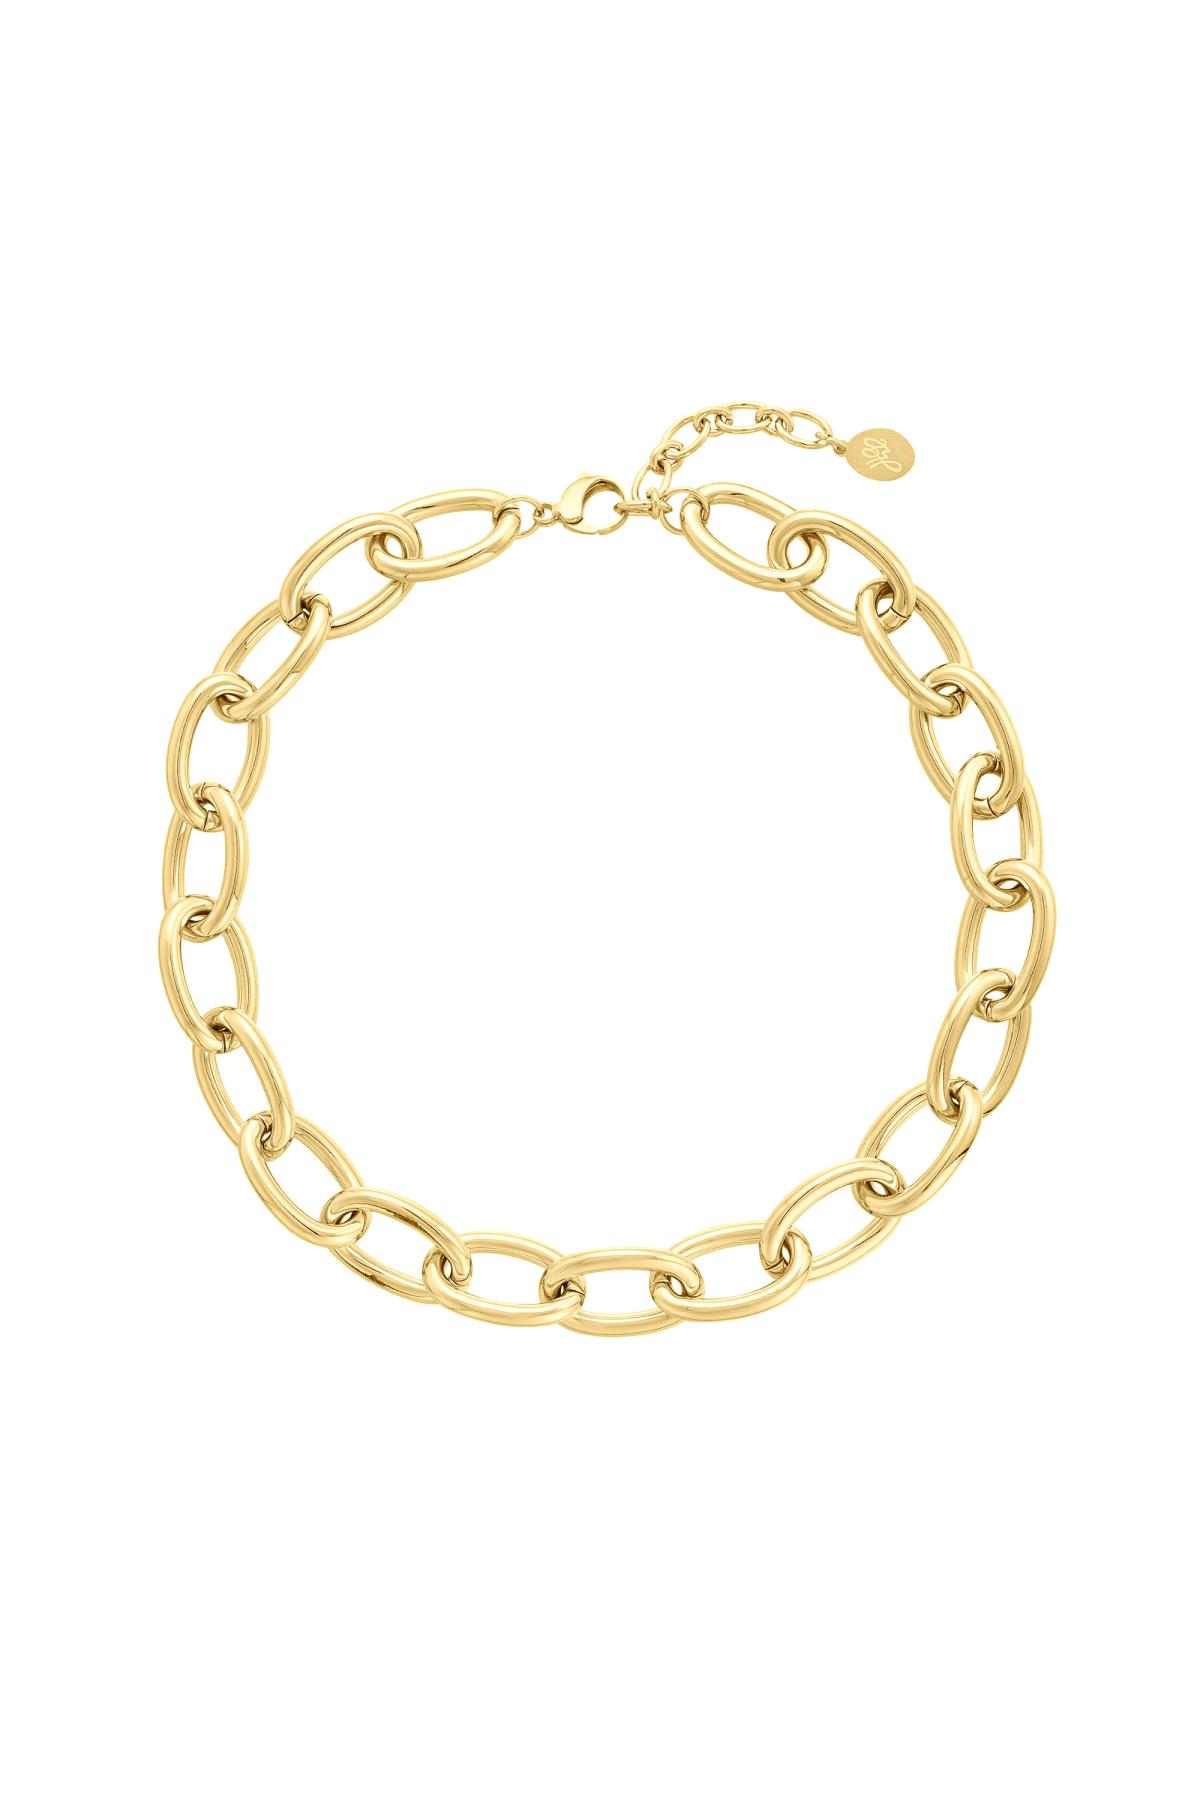 Klobige Halskette mit großen Gliedern Gold Edelstahl 